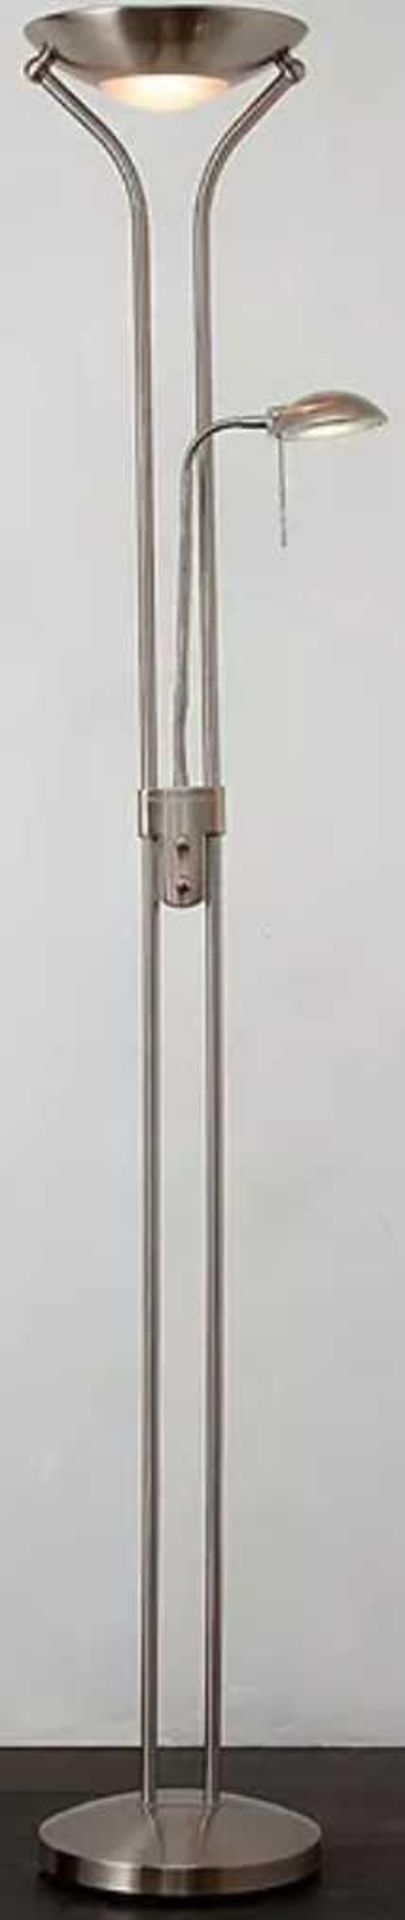 RRP £180 John Lewis Zella Uplighter Led Module Lamp